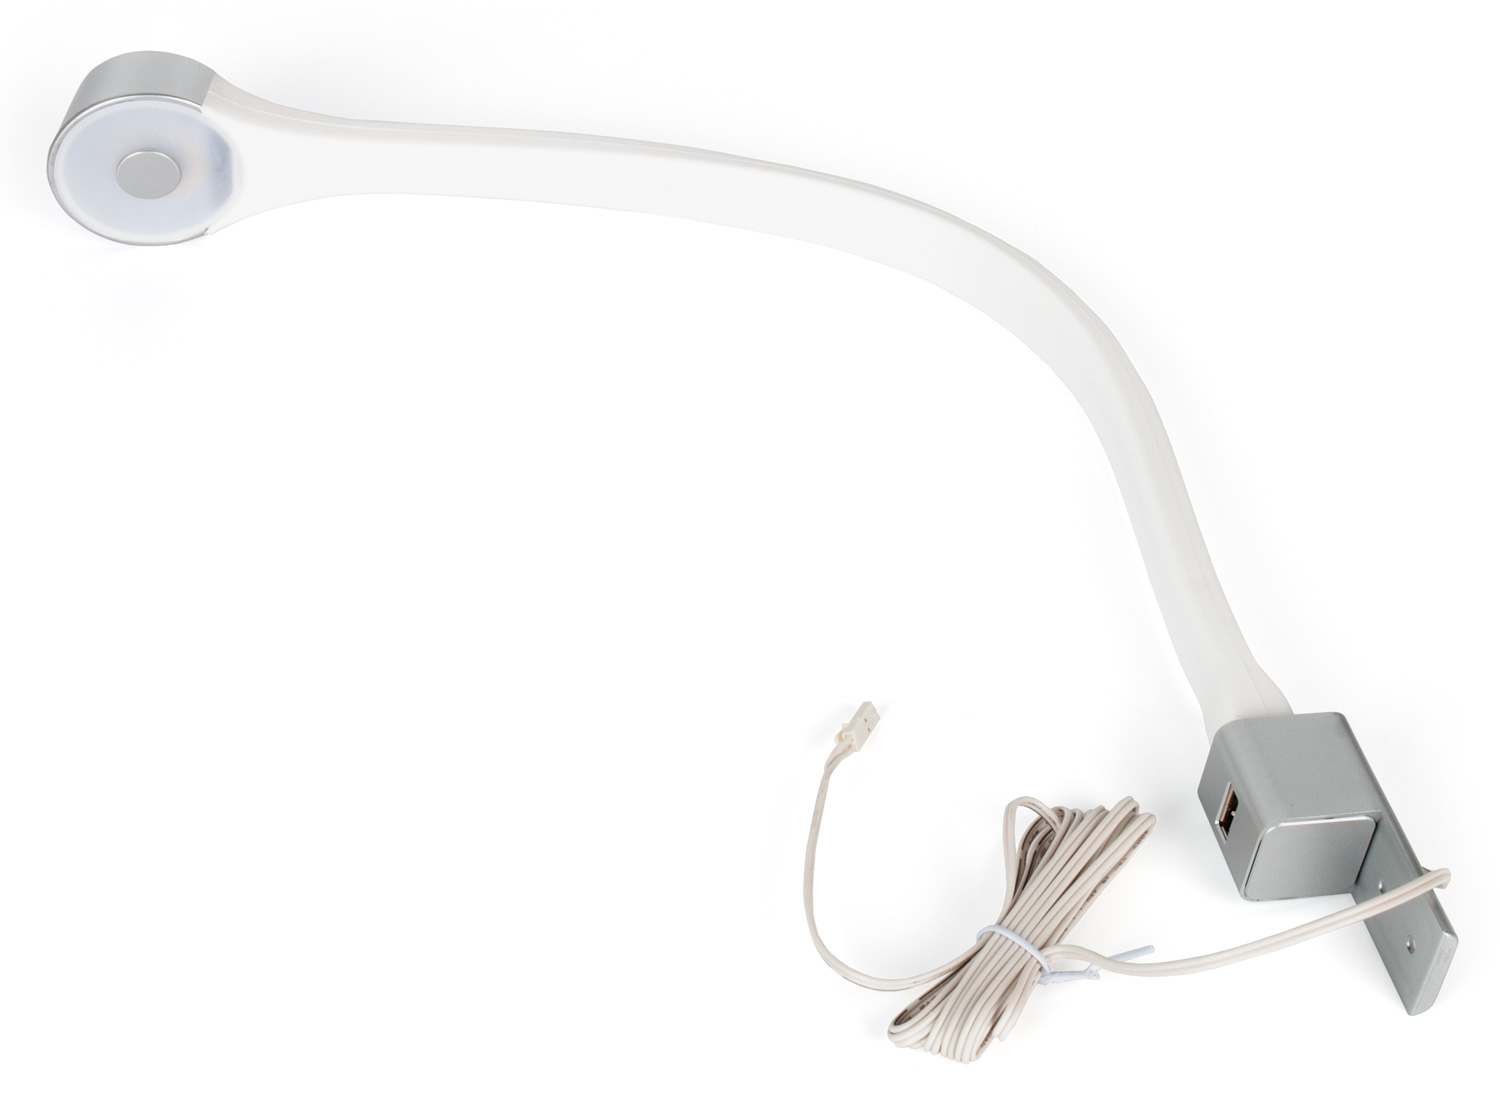 Светильник FLEXI  2,5Вт, 12В, с разъемом USB и кабелем 2м с разьемом mini серебро/свет натуральный